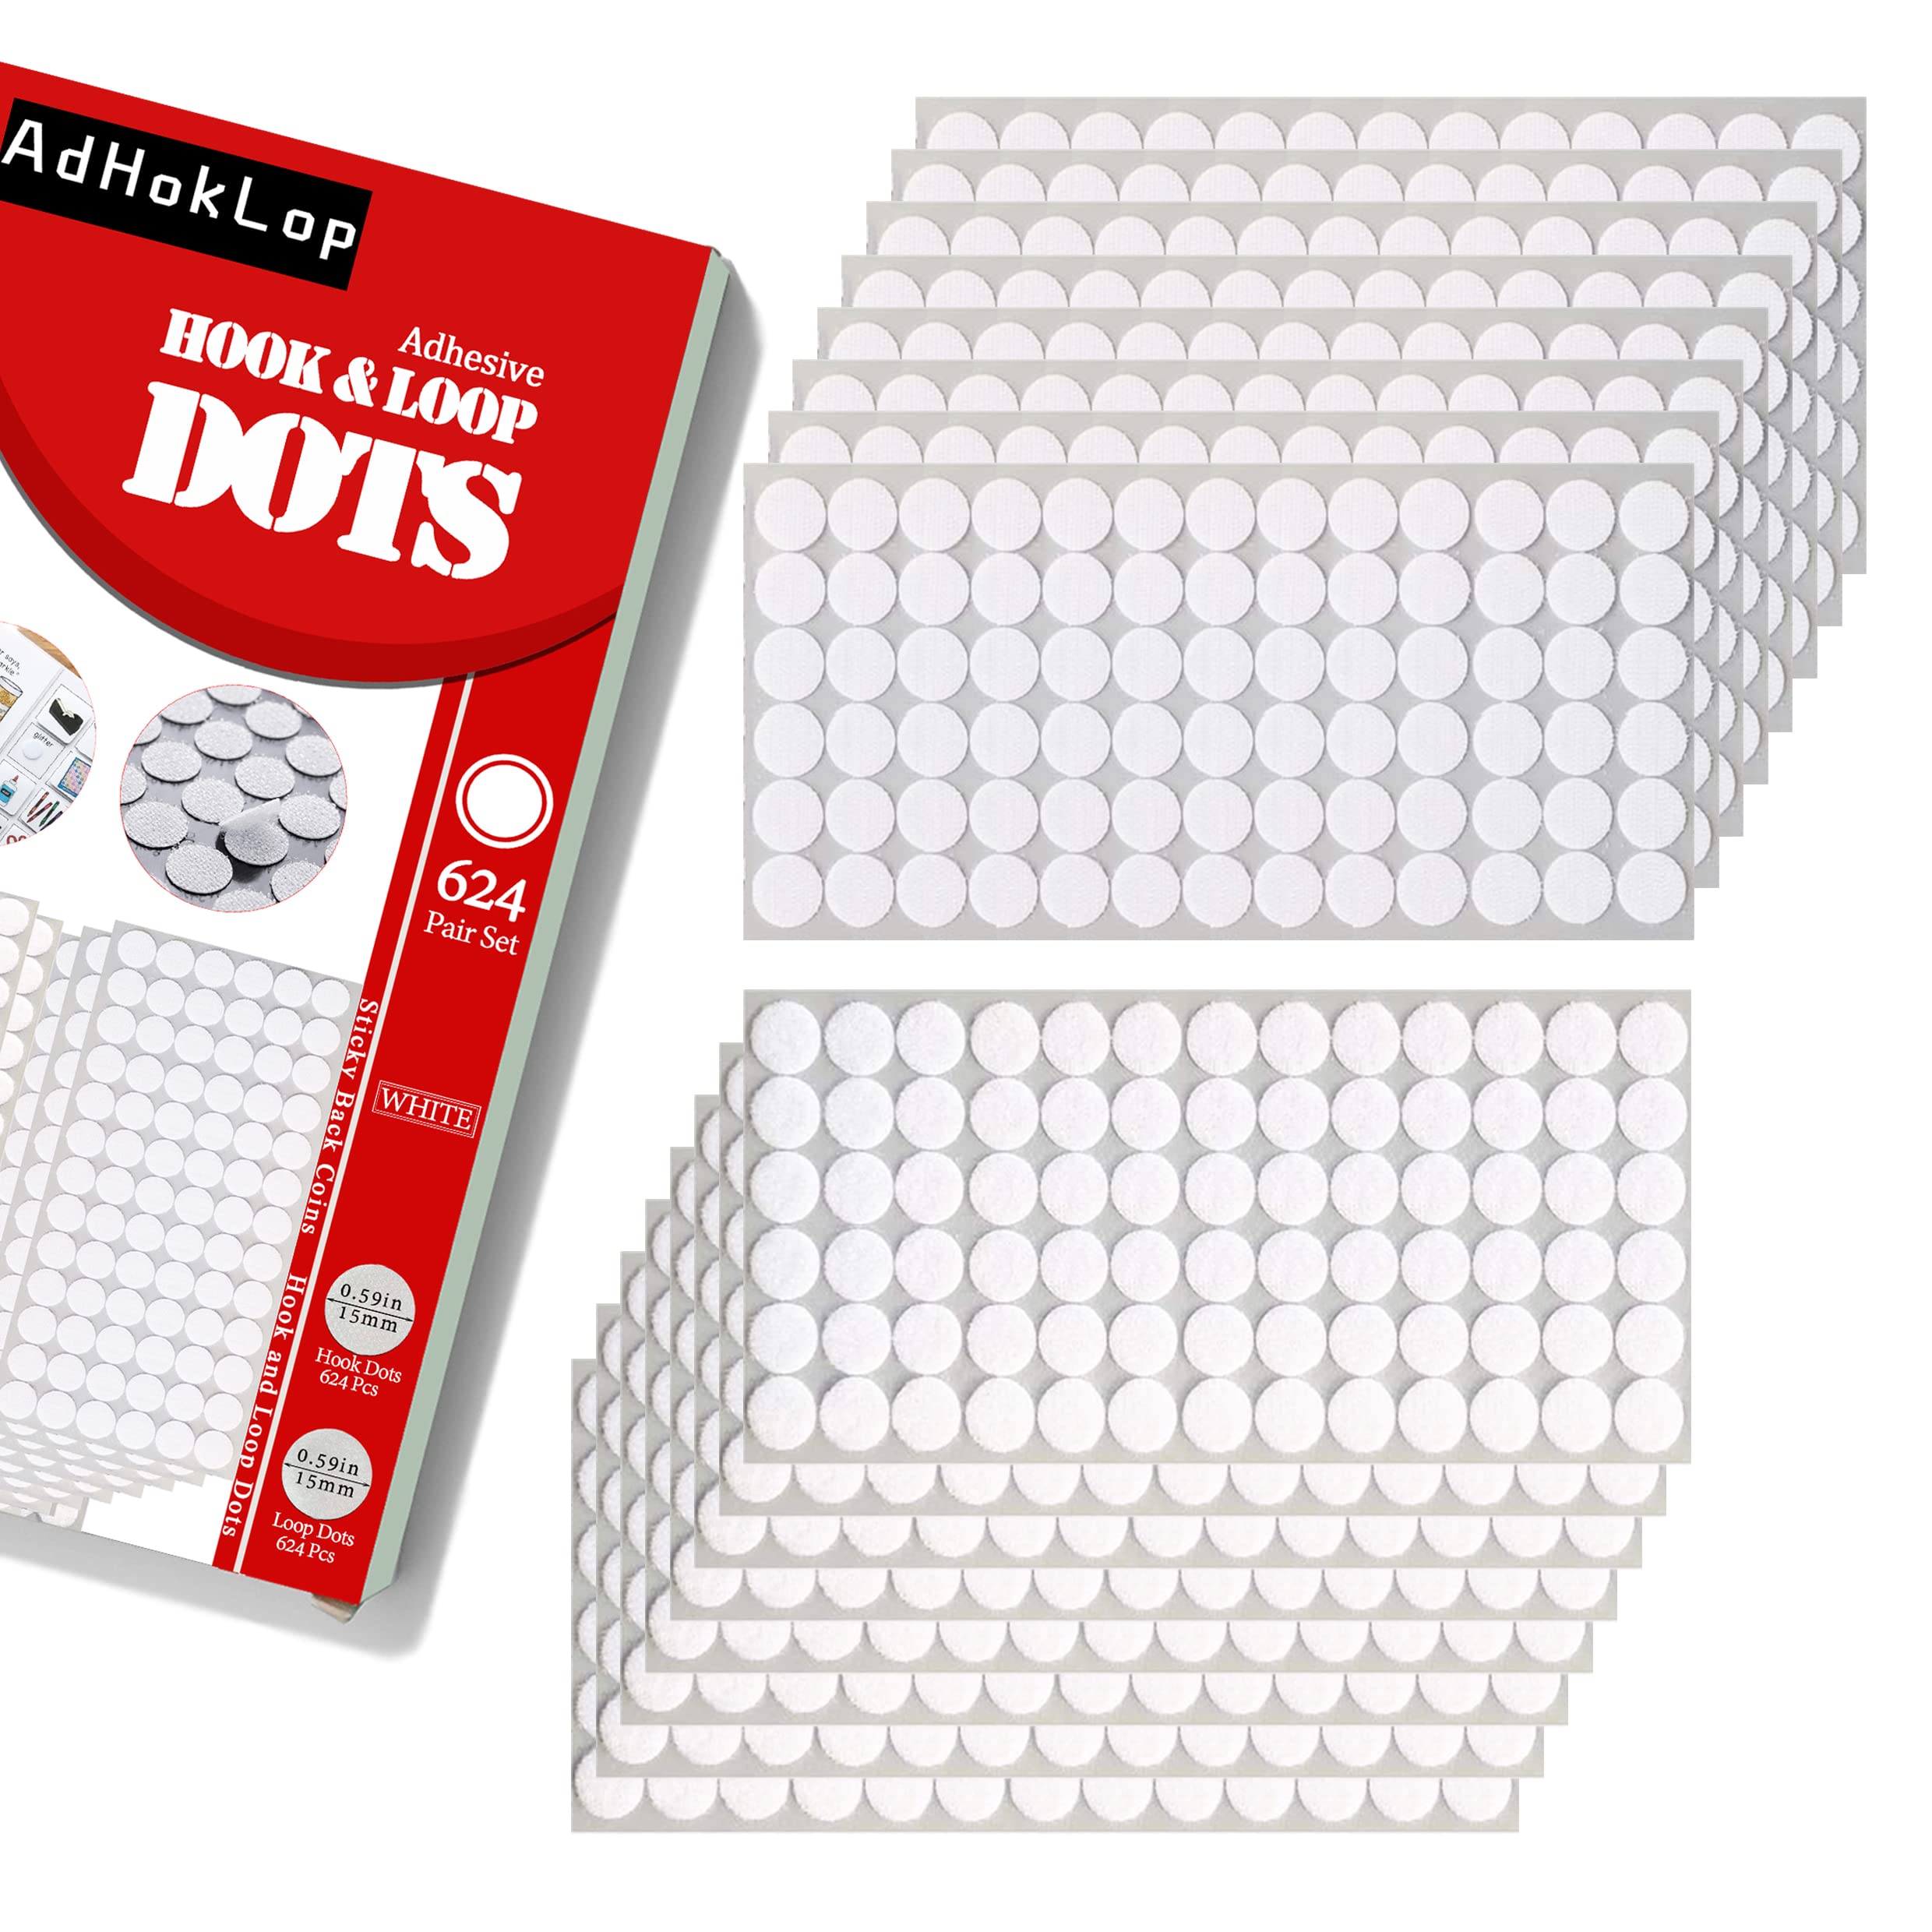  Self Adhesive Dots, 1000Pcs(500 Pair Sets) 0.59 Inch